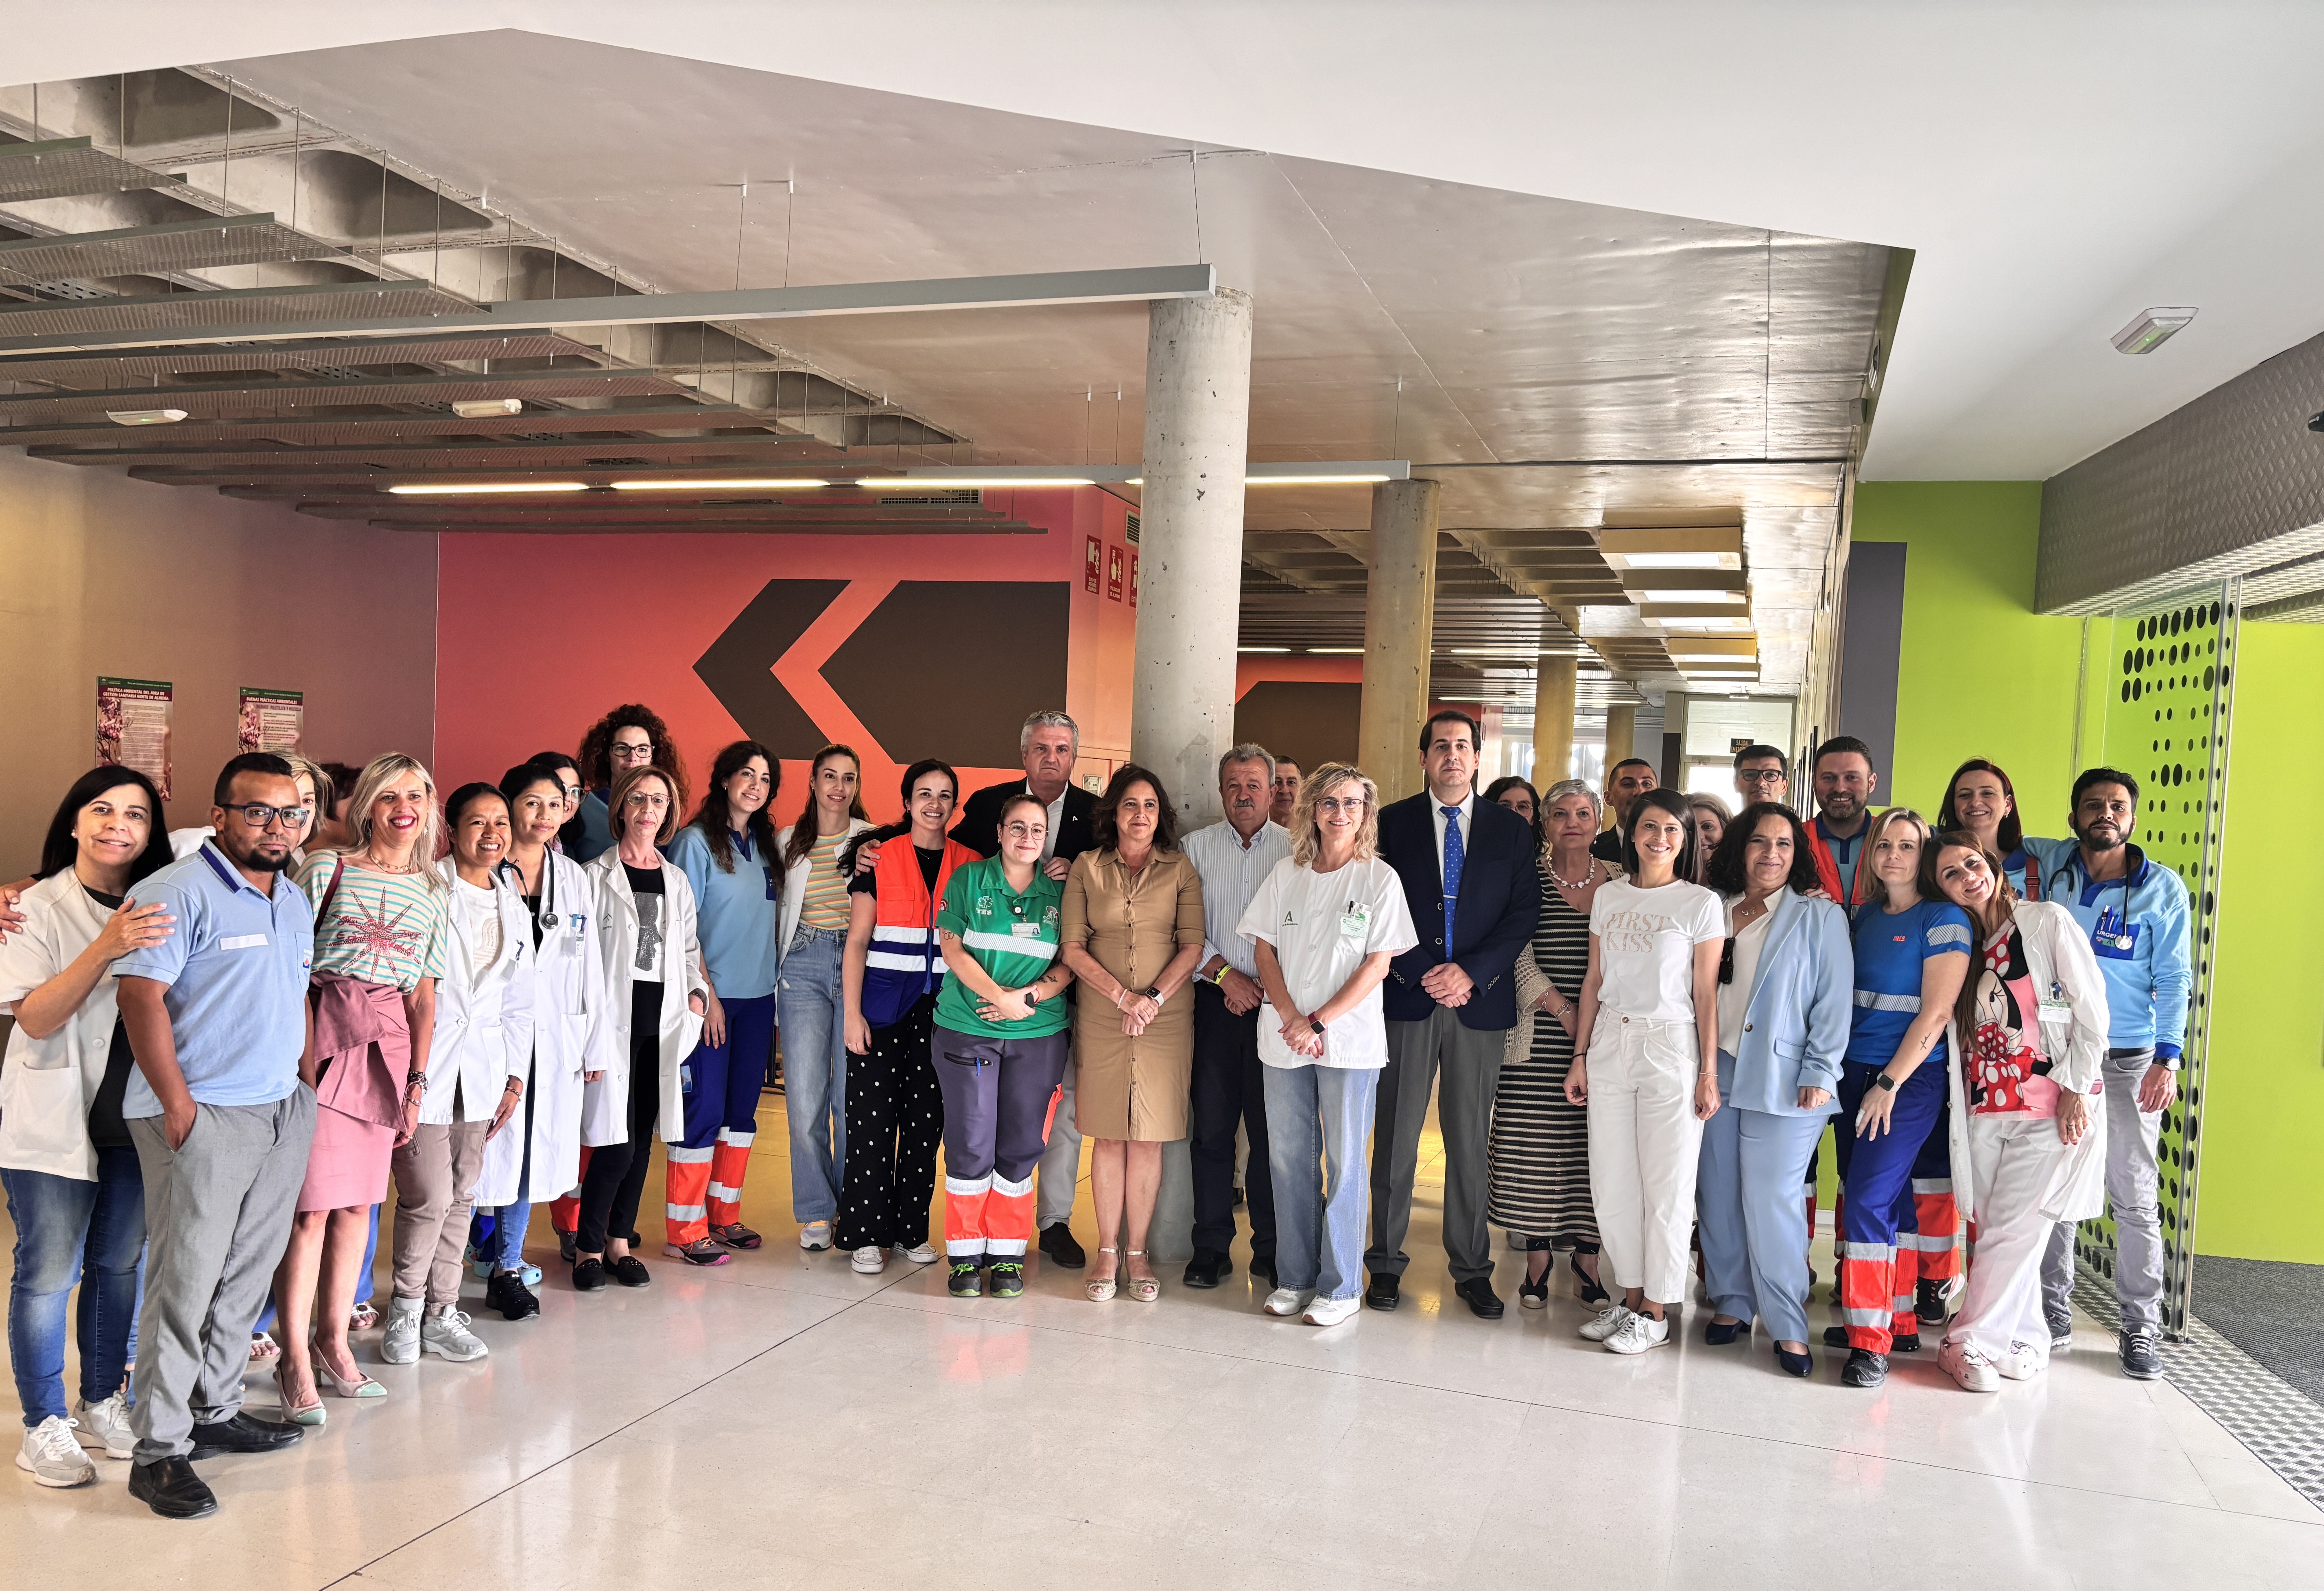 La consejera de Salud y Familias de la Junta de Andalucía, Catalina García, visita el Centro de Salud de Pulpí donde se han llevado a cabo distintas mejoras